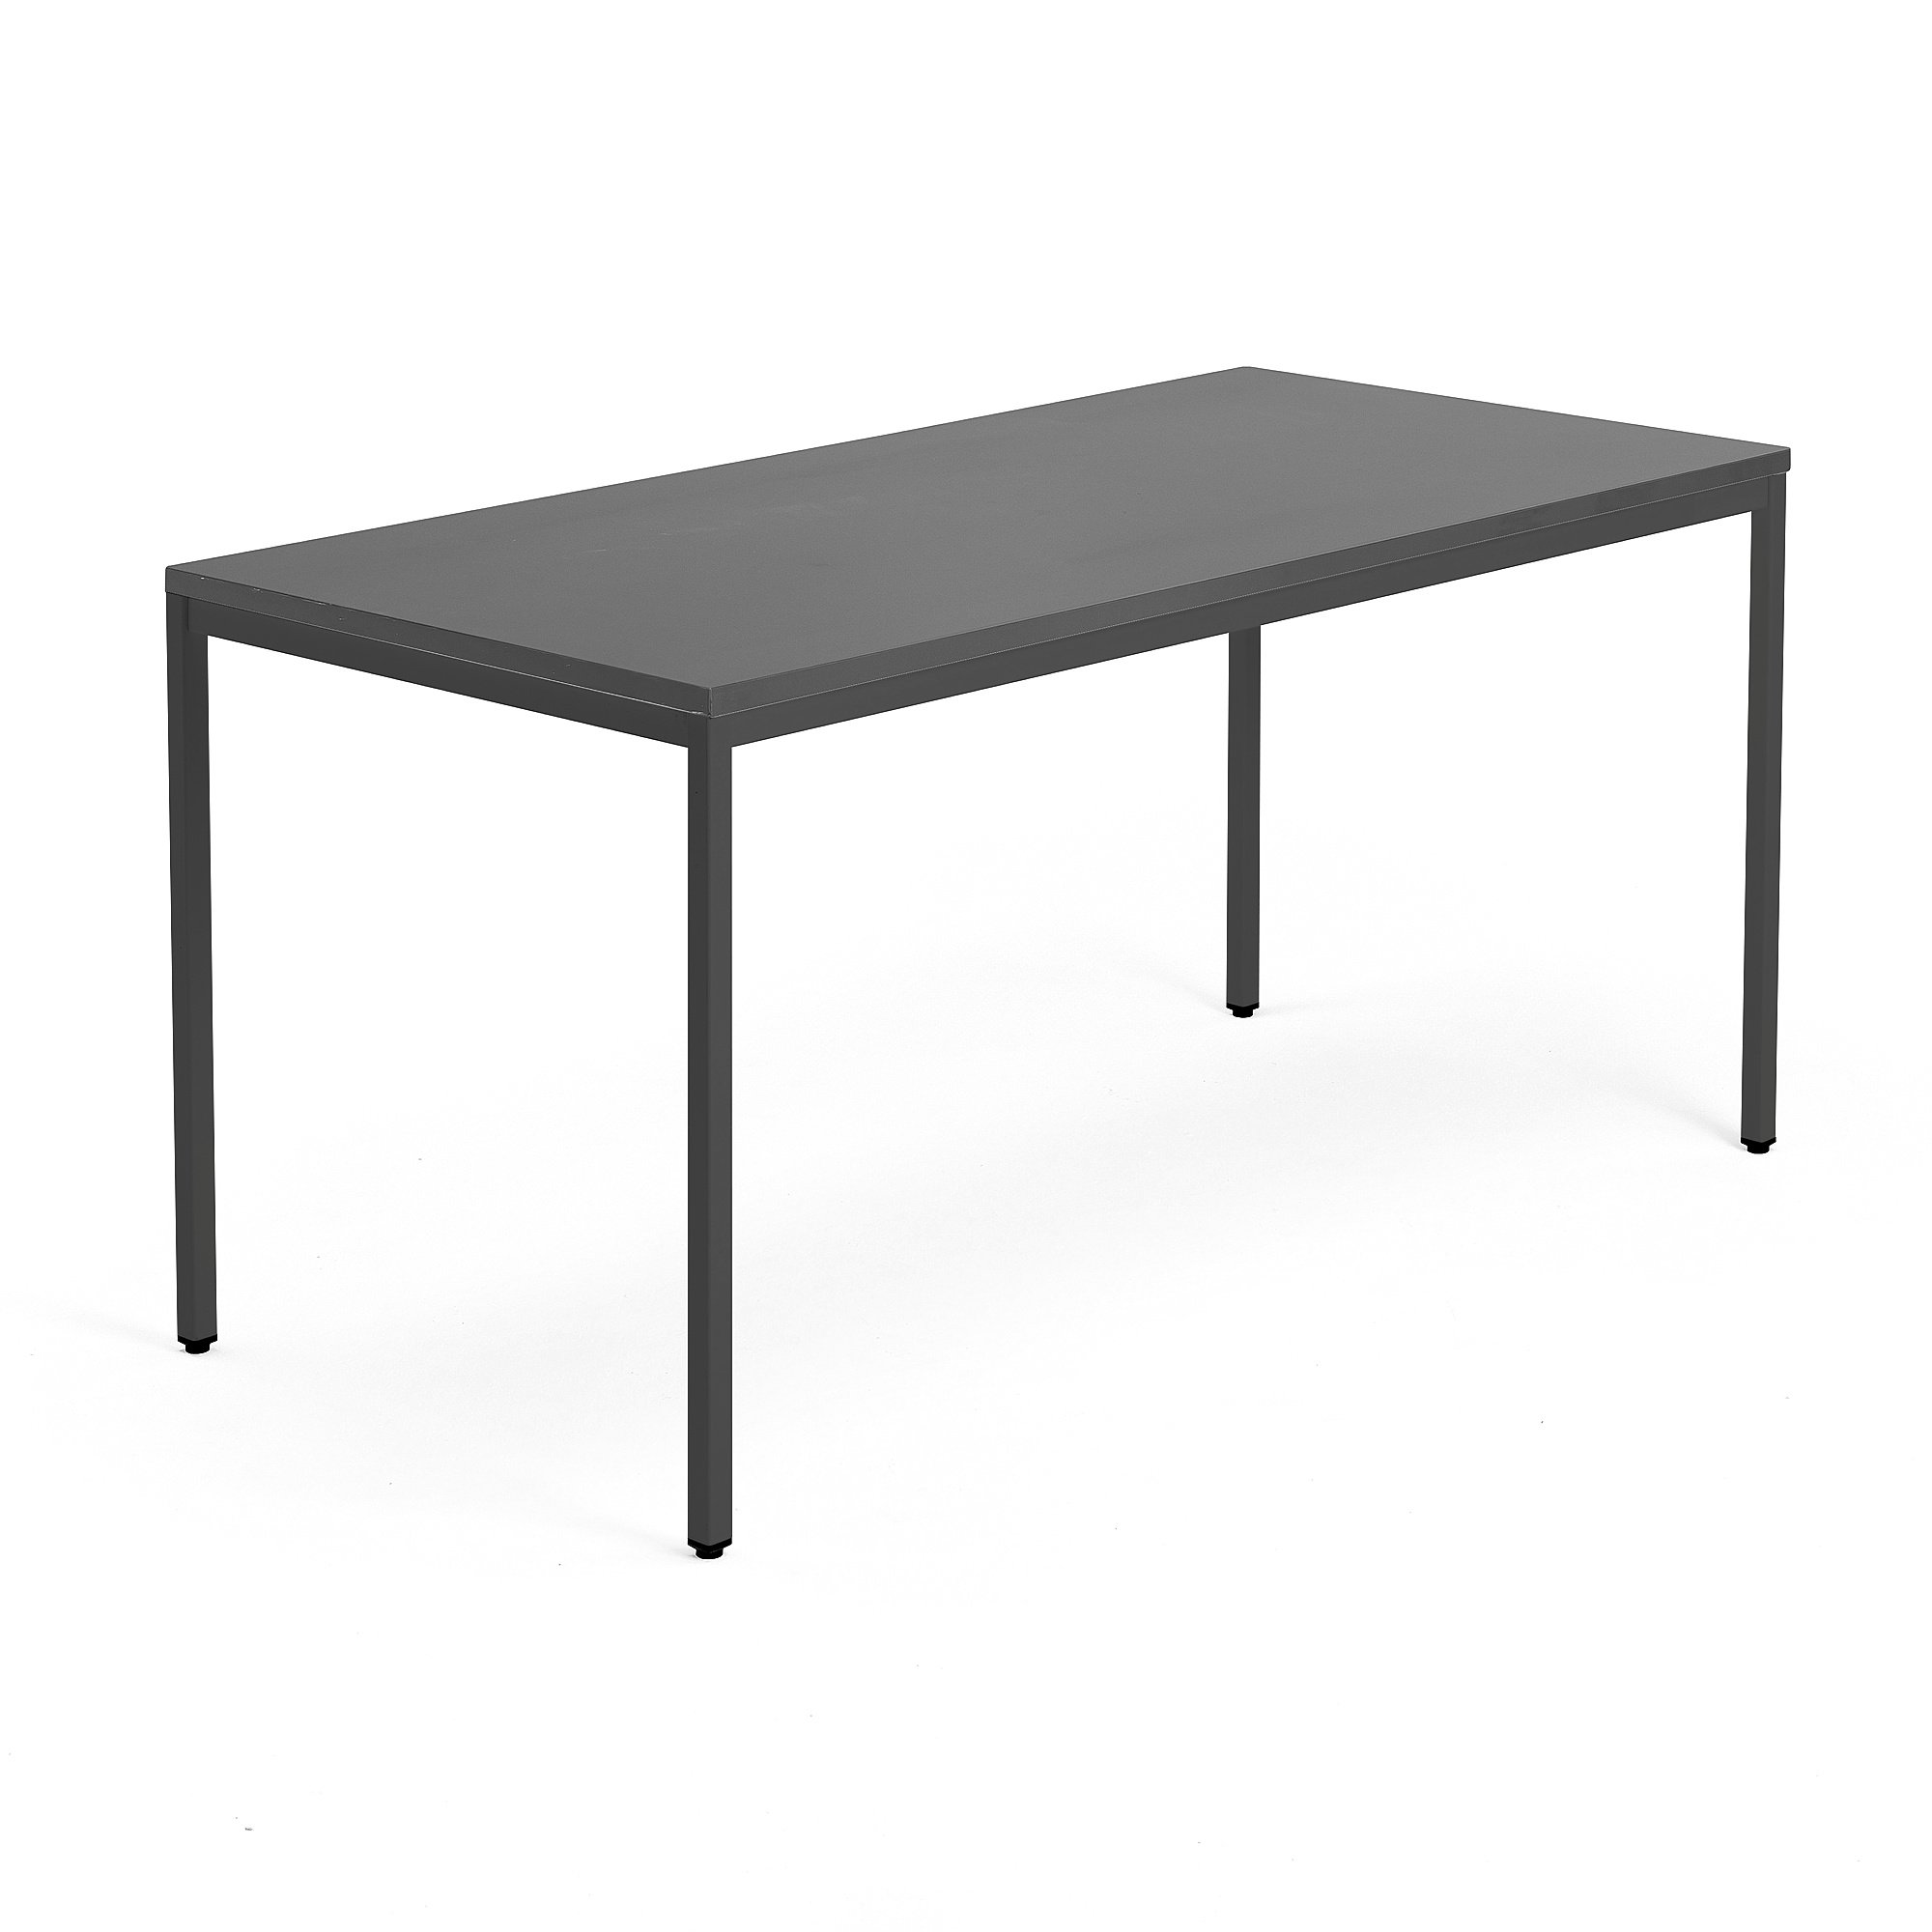 Psací stůl QBUS, 4 nohy, 1600x800 mm, černý rám, černá